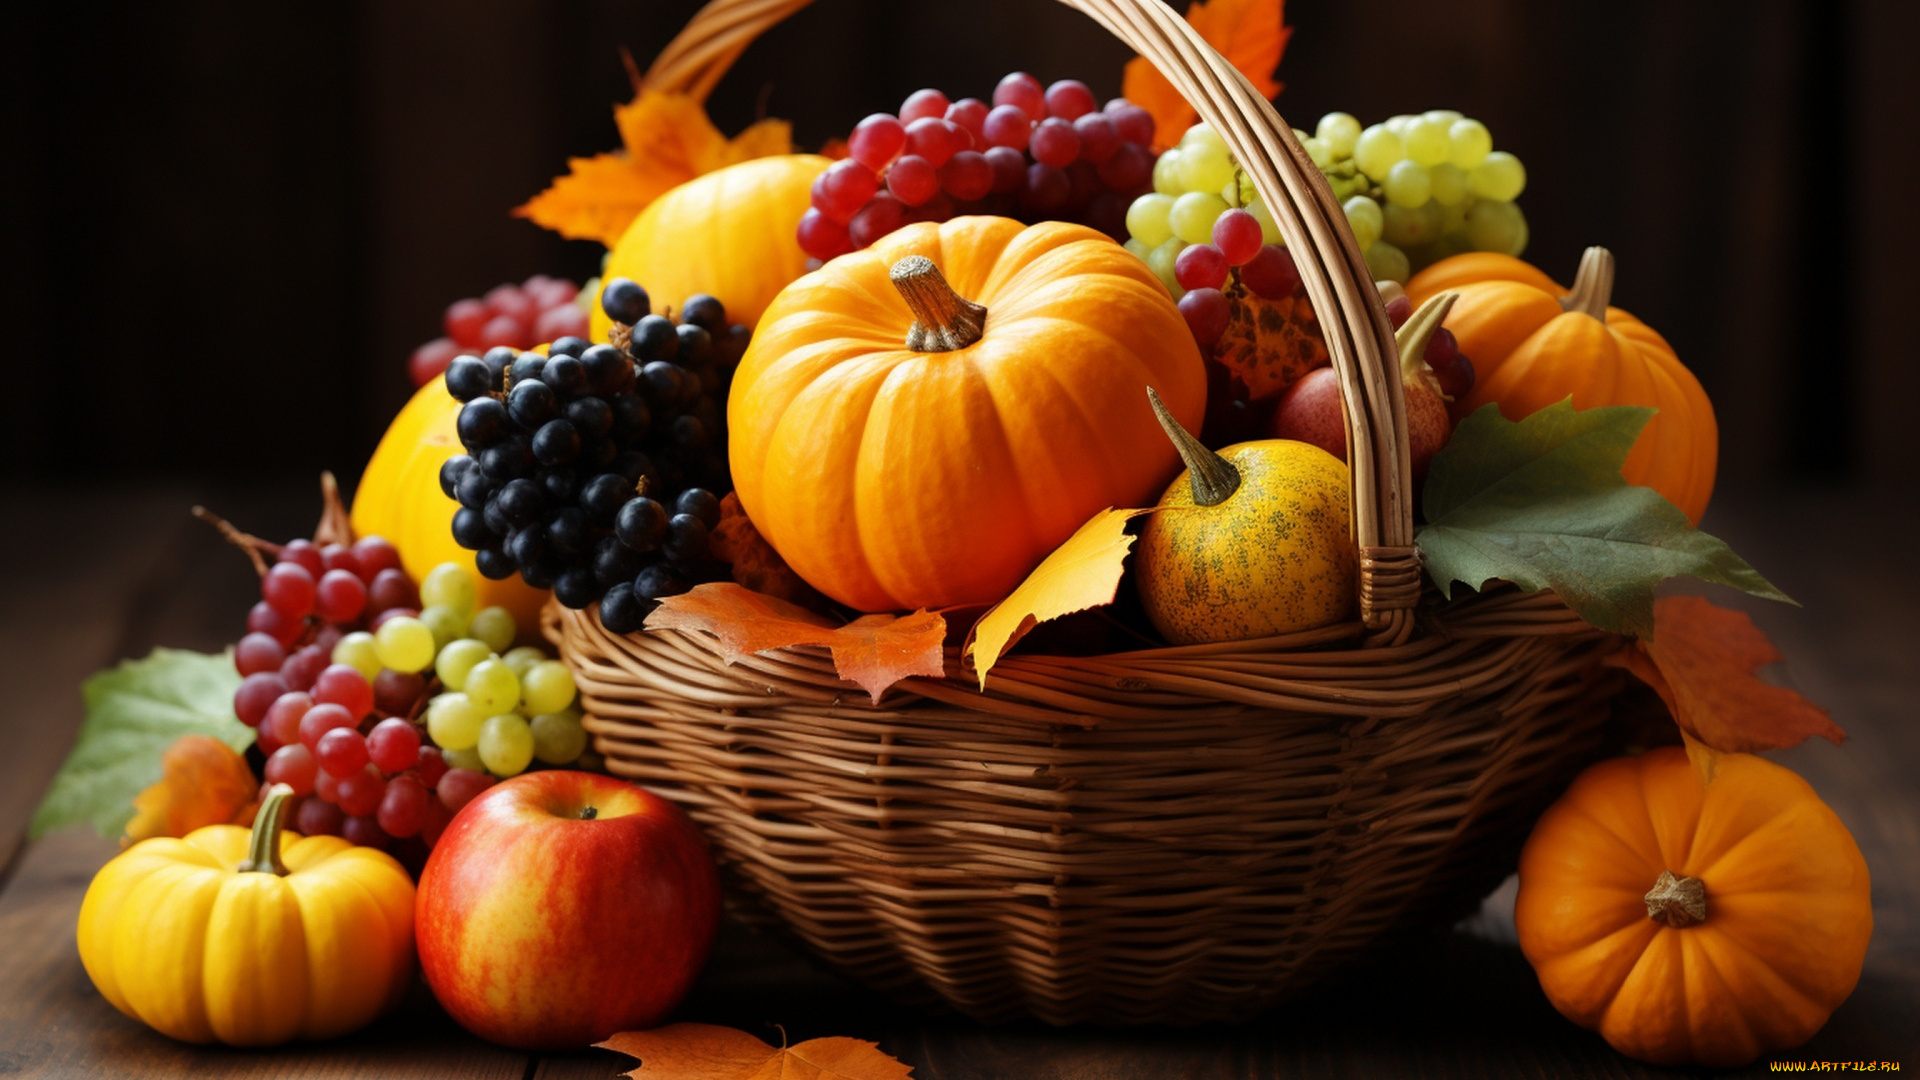 еда, фрукты, и, овощи, вместе, корзинка, кленовые, листья, виноград, тыквы, яблоко